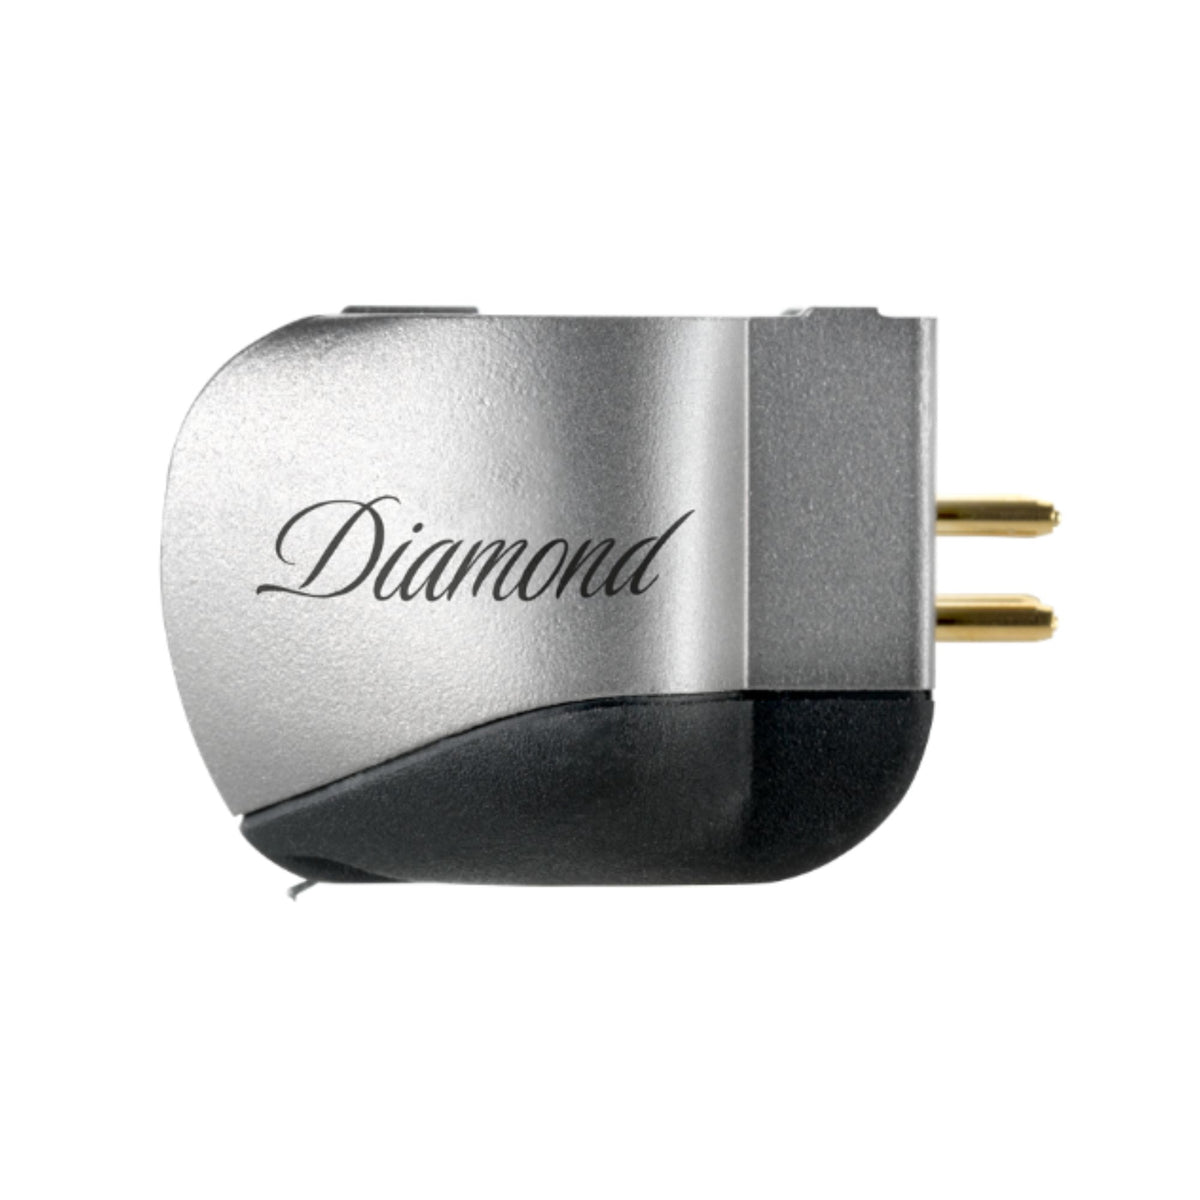 Ortofon MC Diamond - Moving Coil Cartridge, Ortofon, Turntable Accessories - AVStore.in